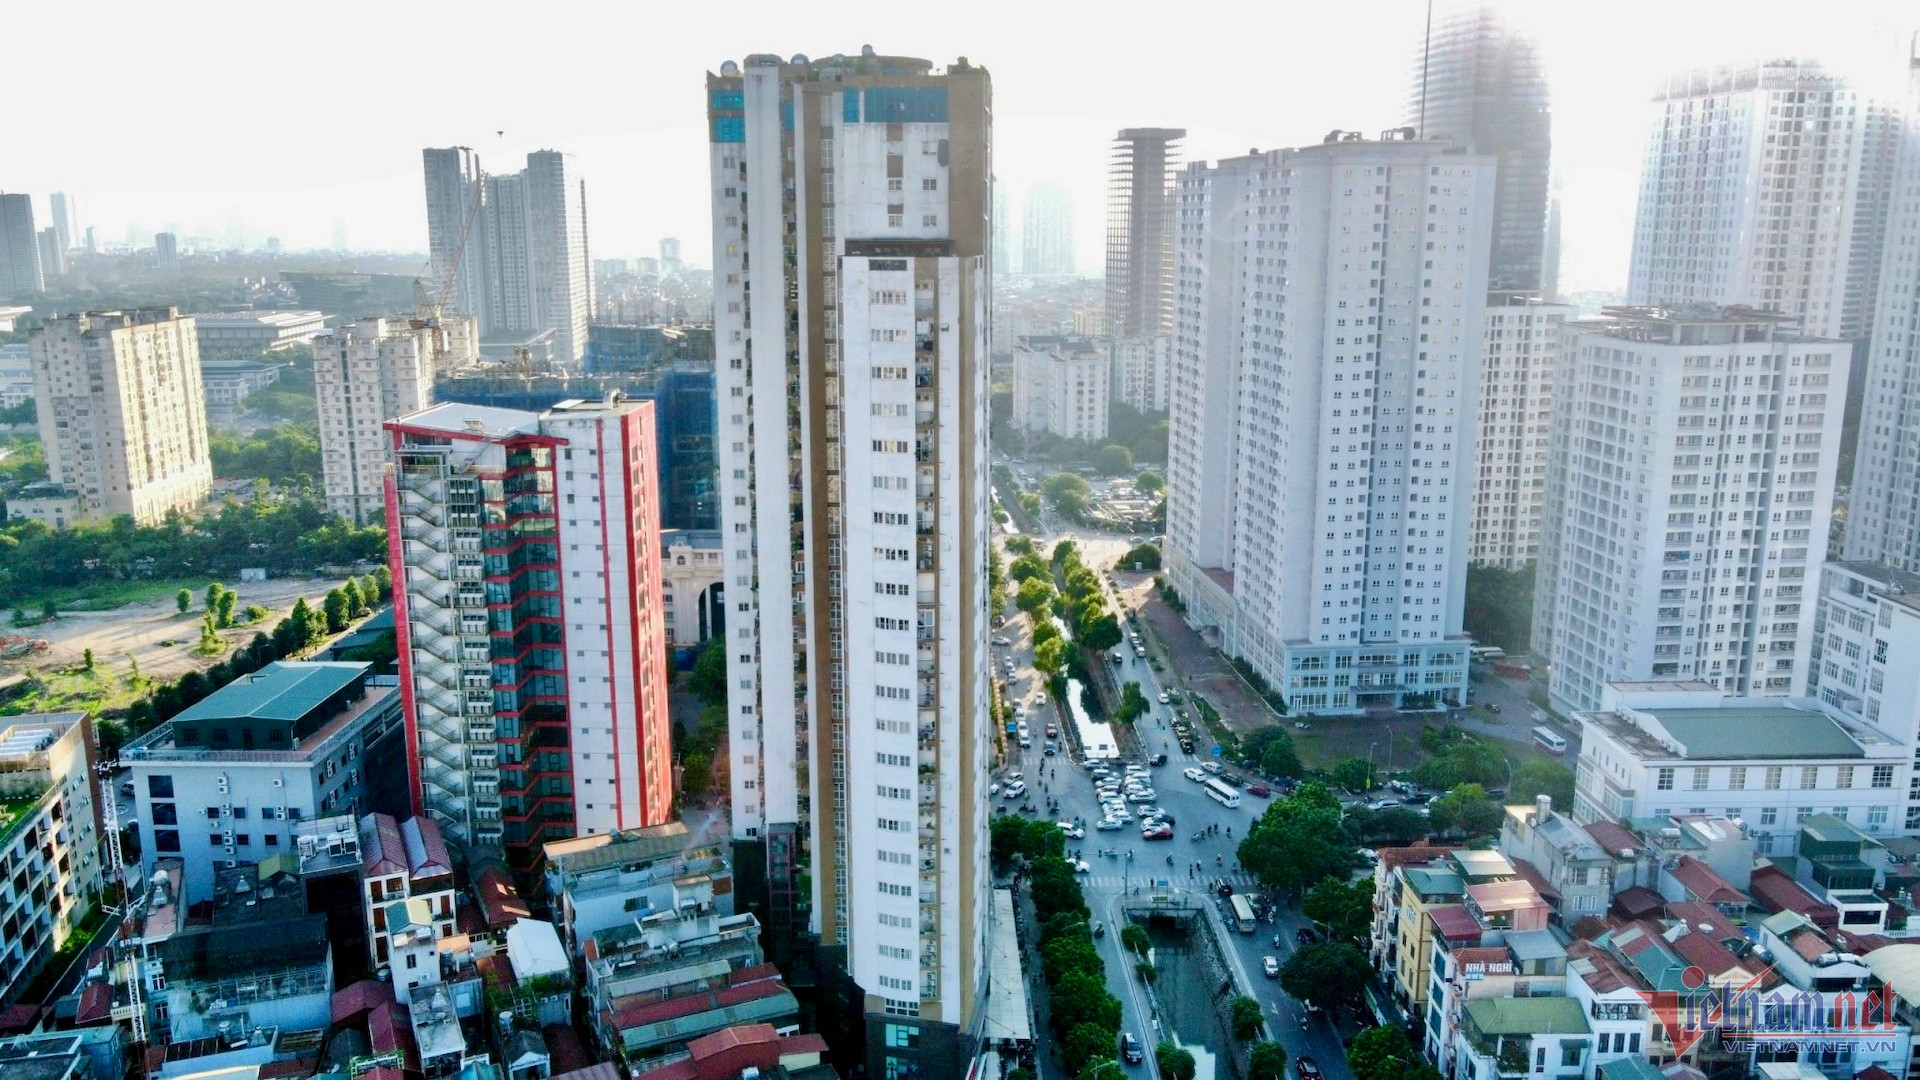 Chung cư Hà Nội tăng giá tiền tỷ, căn hộ không sổ hồng chỉ hơn 1,5 tỷ đồng - Ảnh 1.